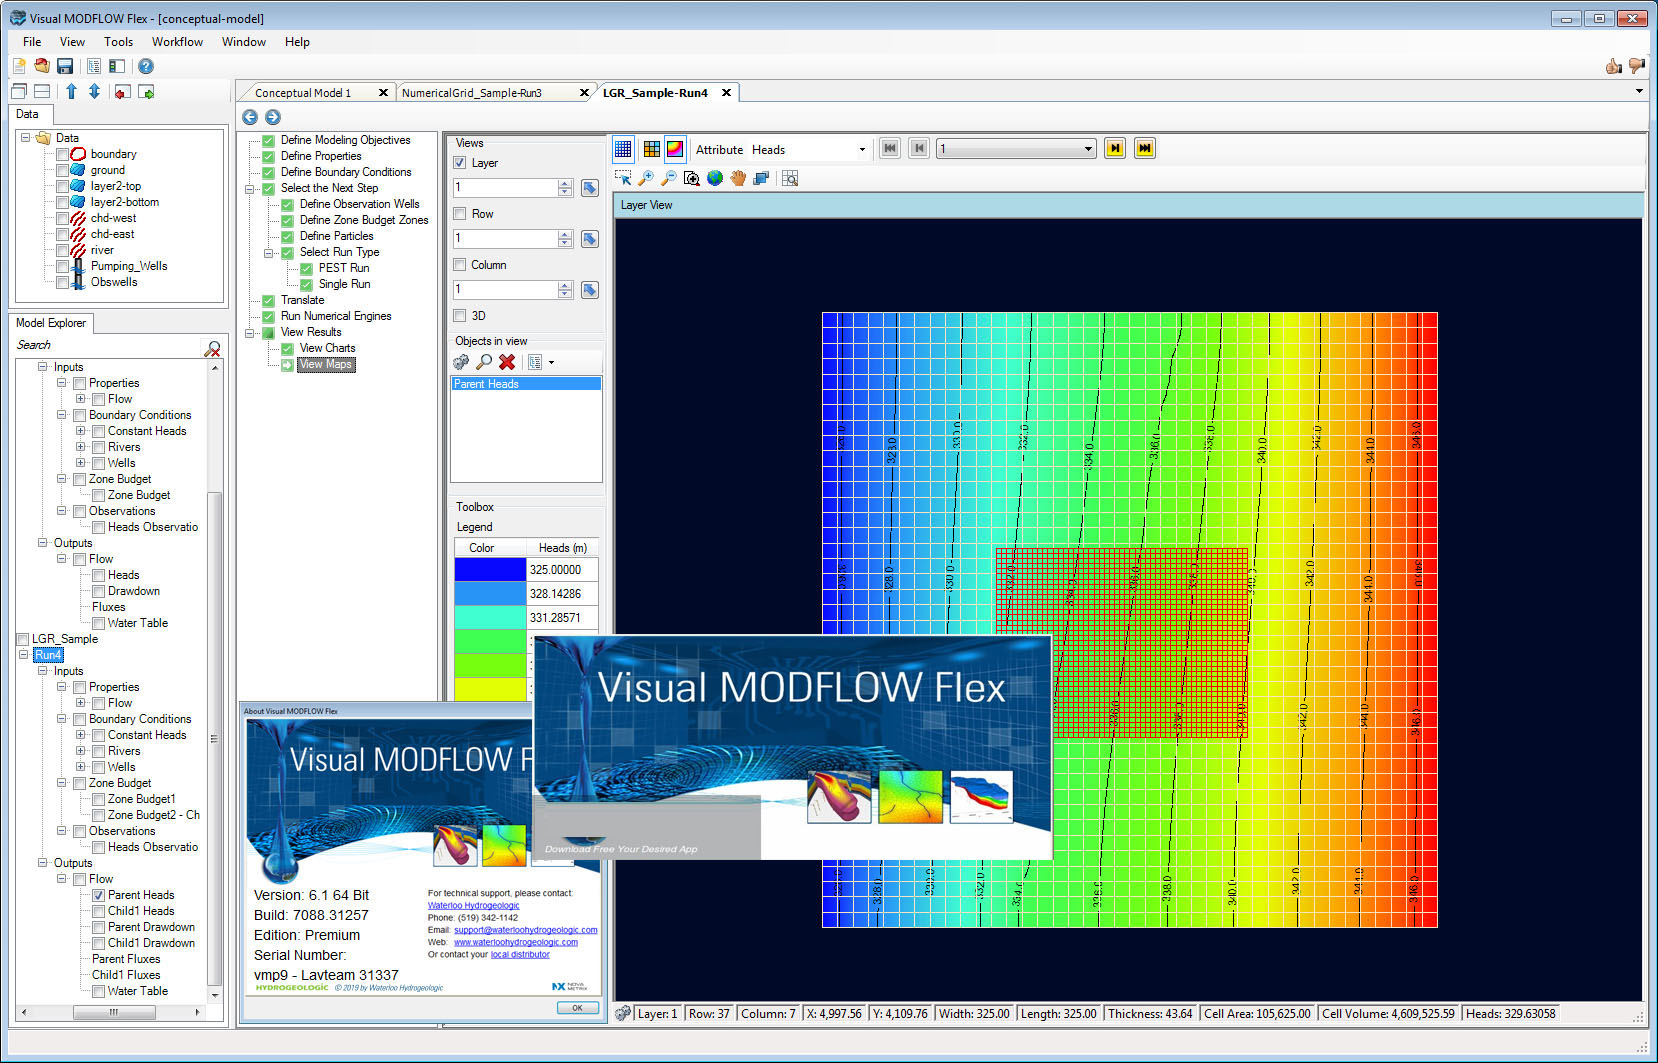 visual modflow flex 6.1